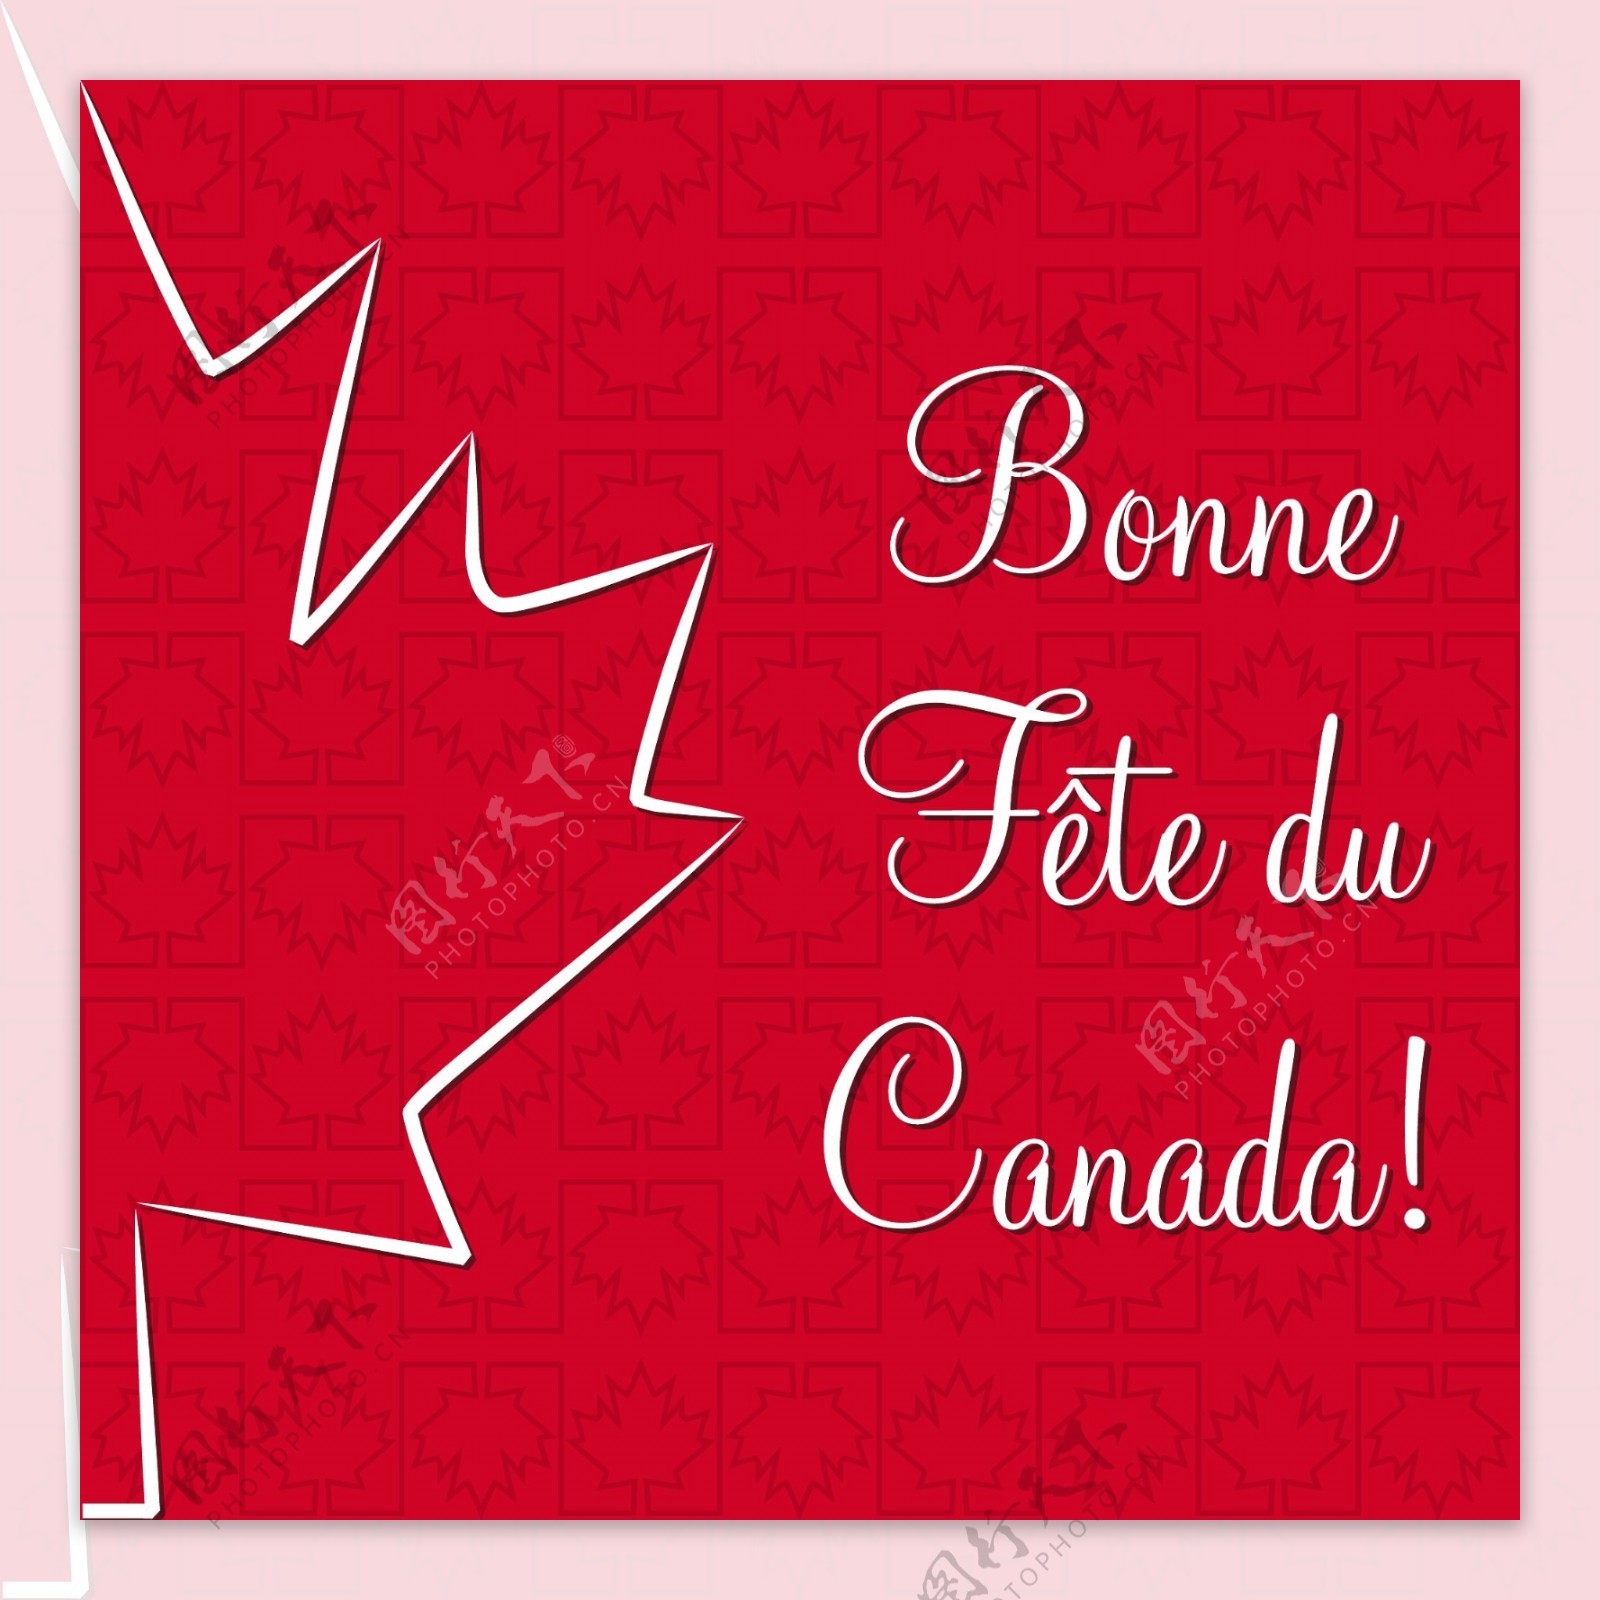 枫叶加拿大国庆节快乐卡矢量格式